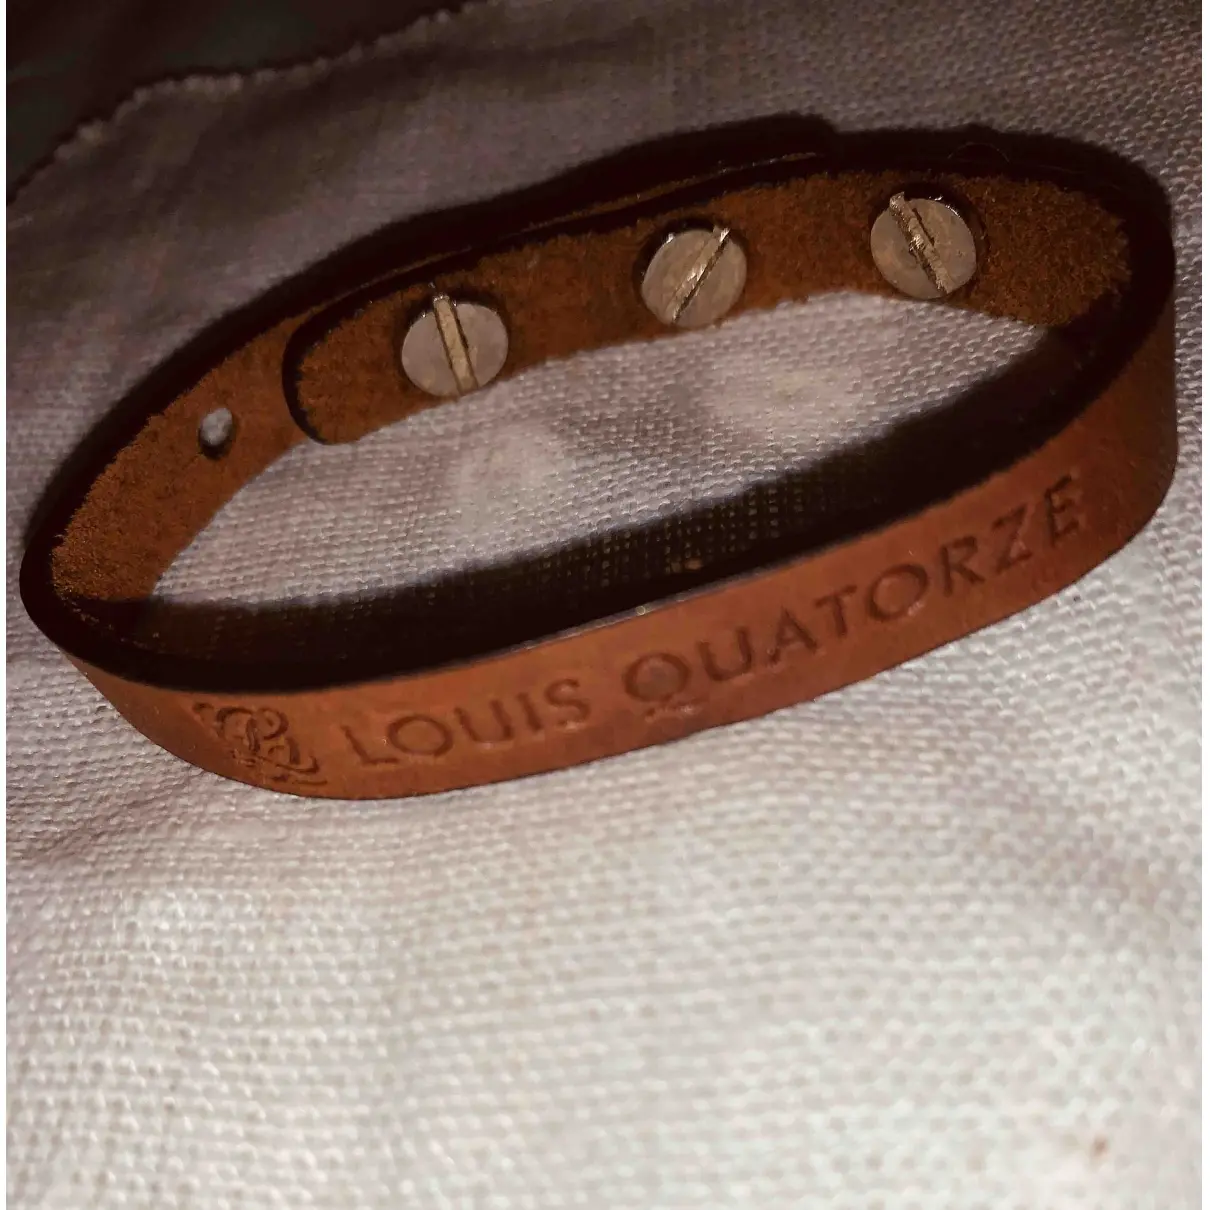 Louis Quatorze Leather bracelet for sale